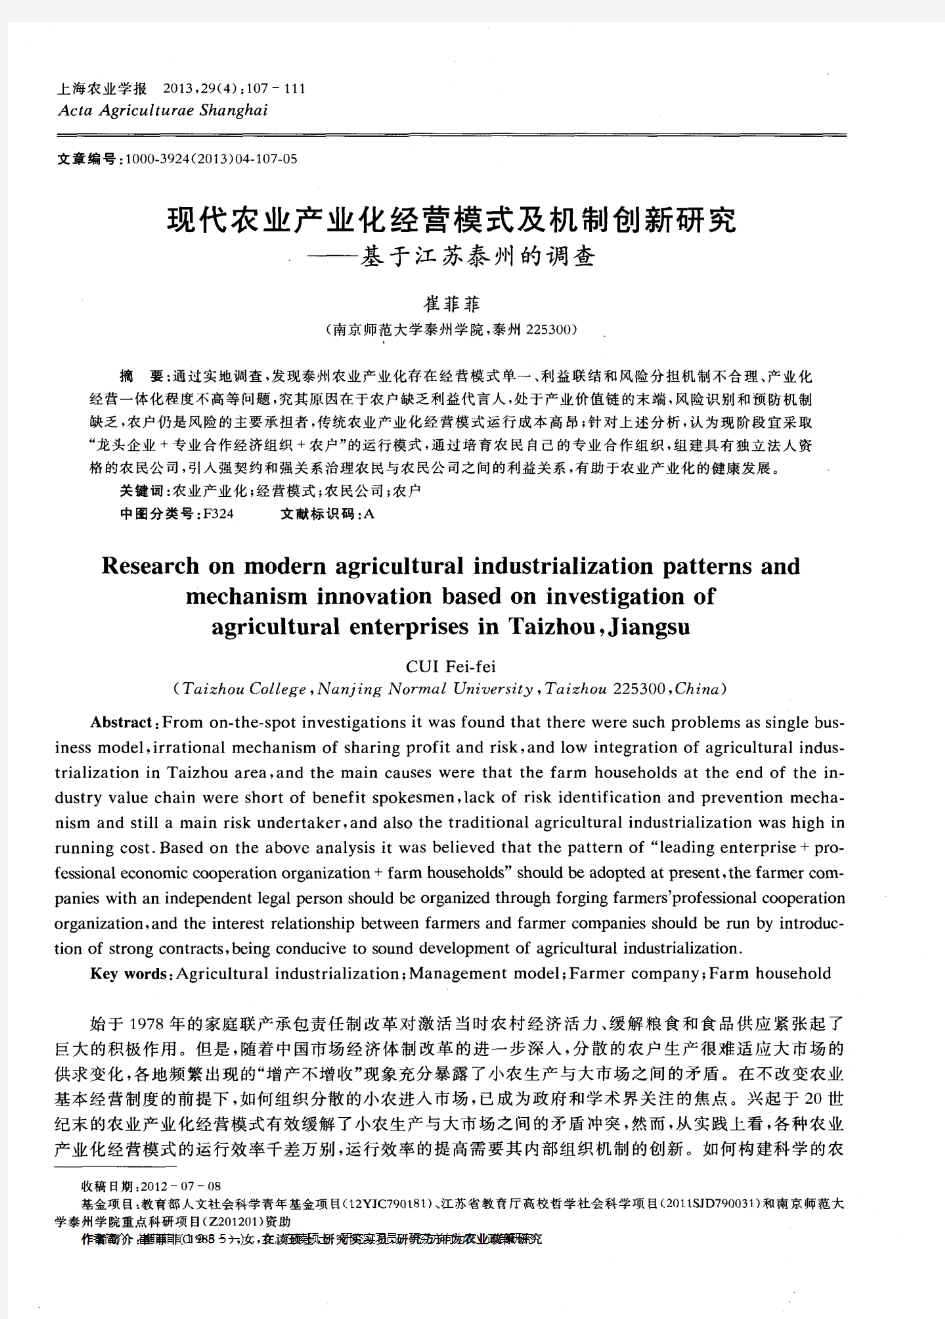 现代农业产业化经营模式及机制创新研究——基于江苏泰州的调查